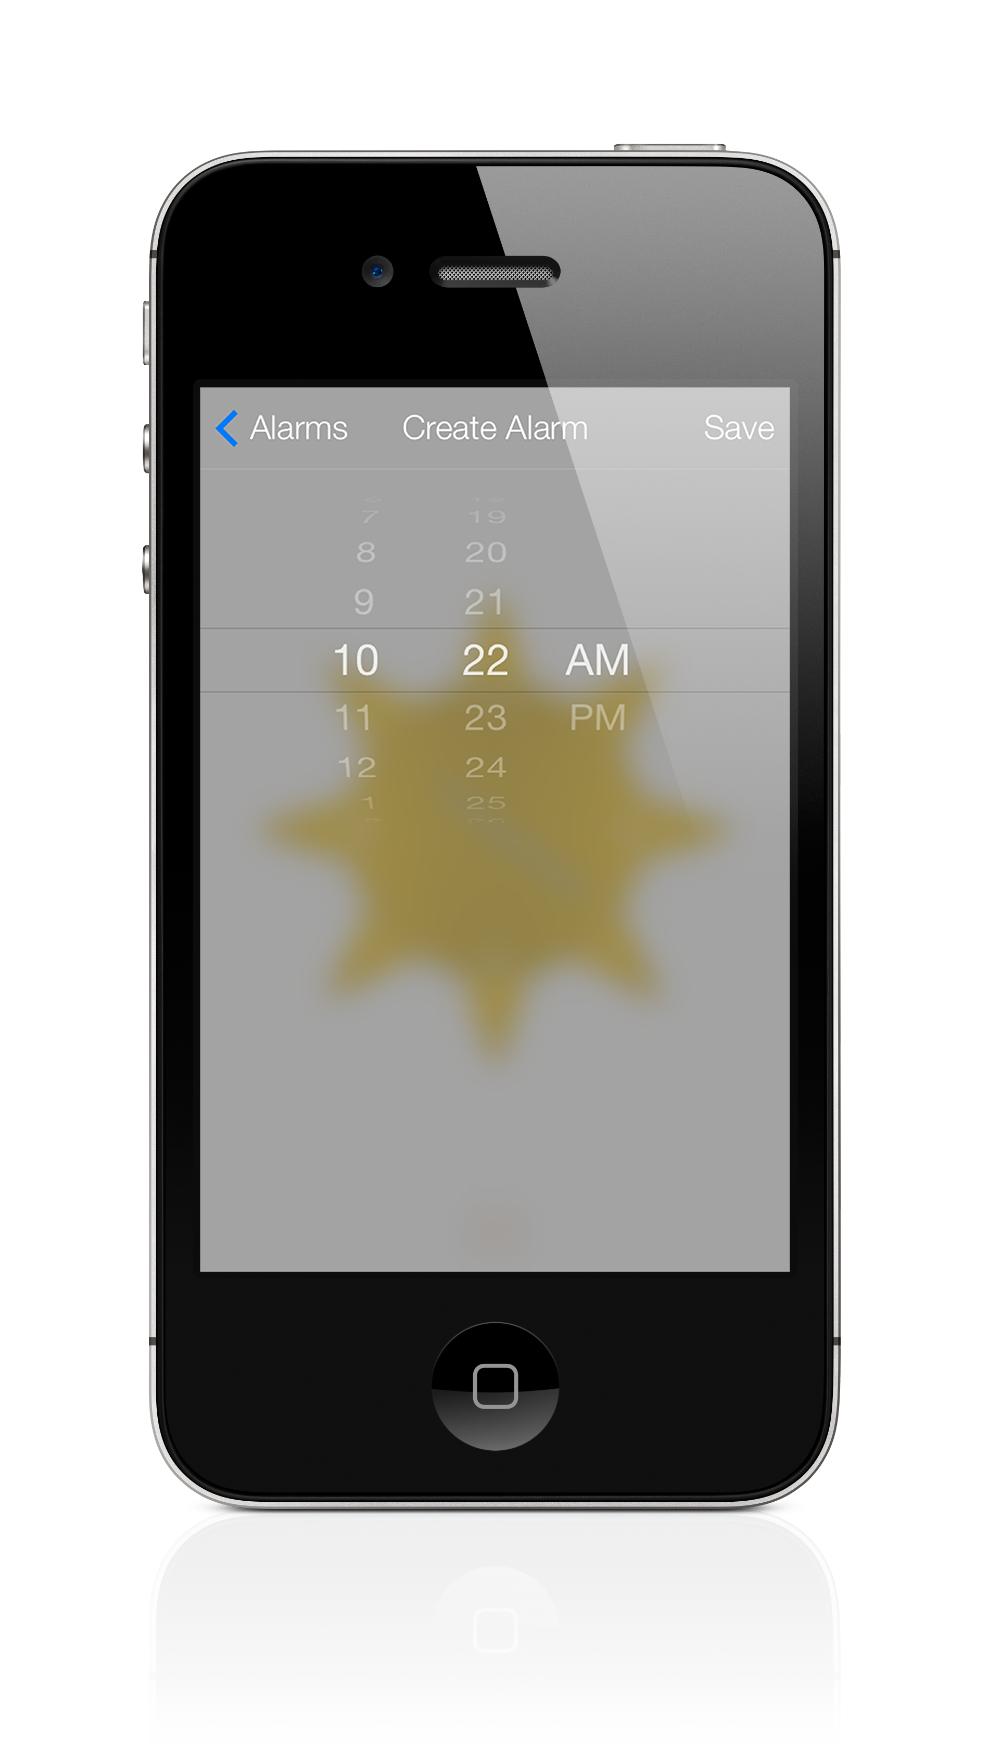 RISE-N-SHINE iPhone Screenshot 2 of 4